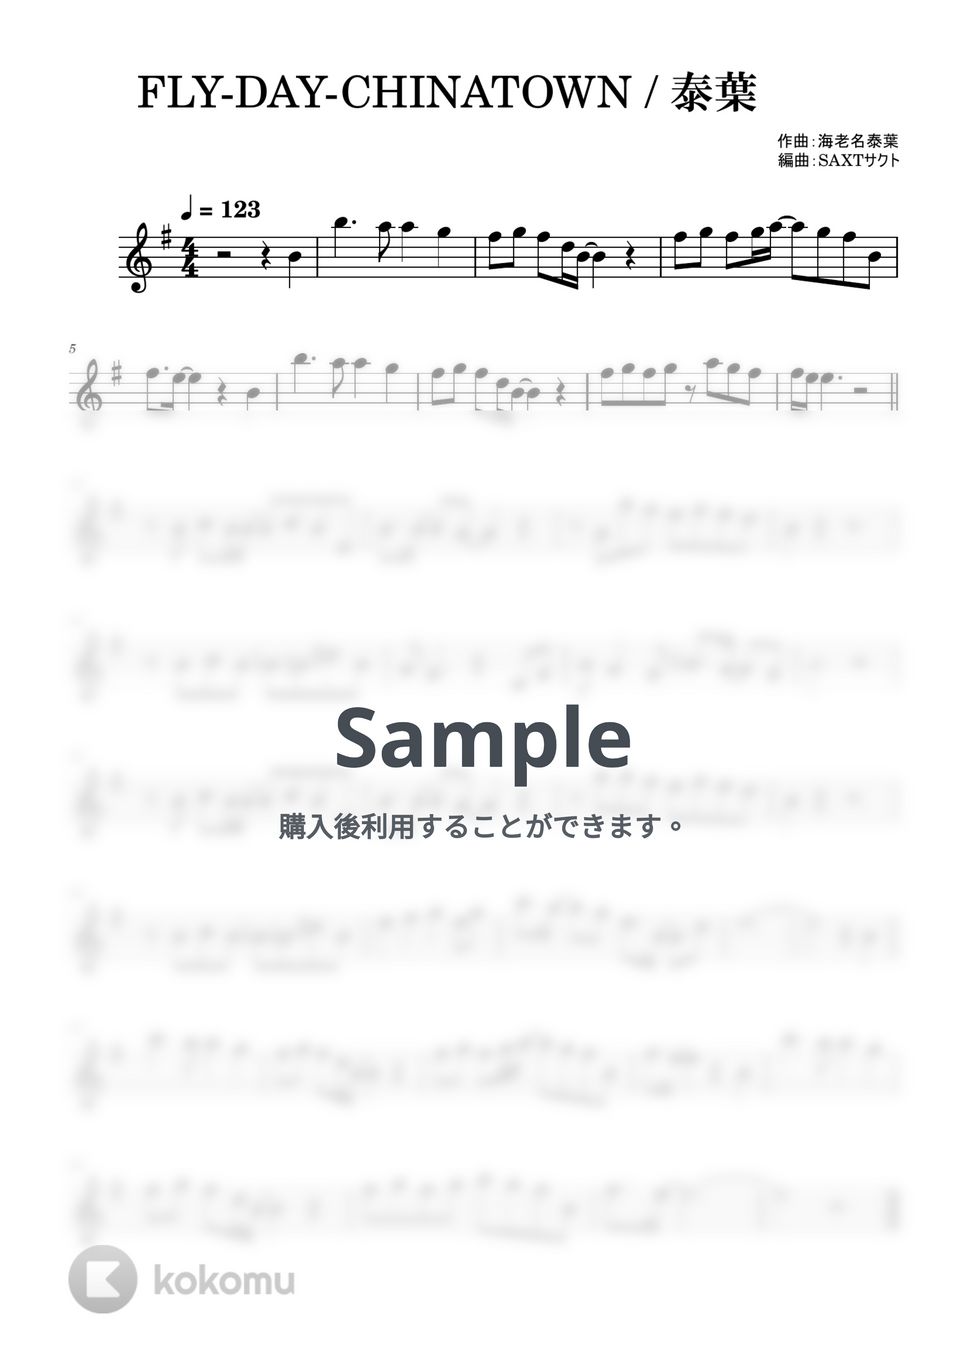 泰葉 - FLY-DAY-CHINATOWN (めちゃラク譜) by SAXT